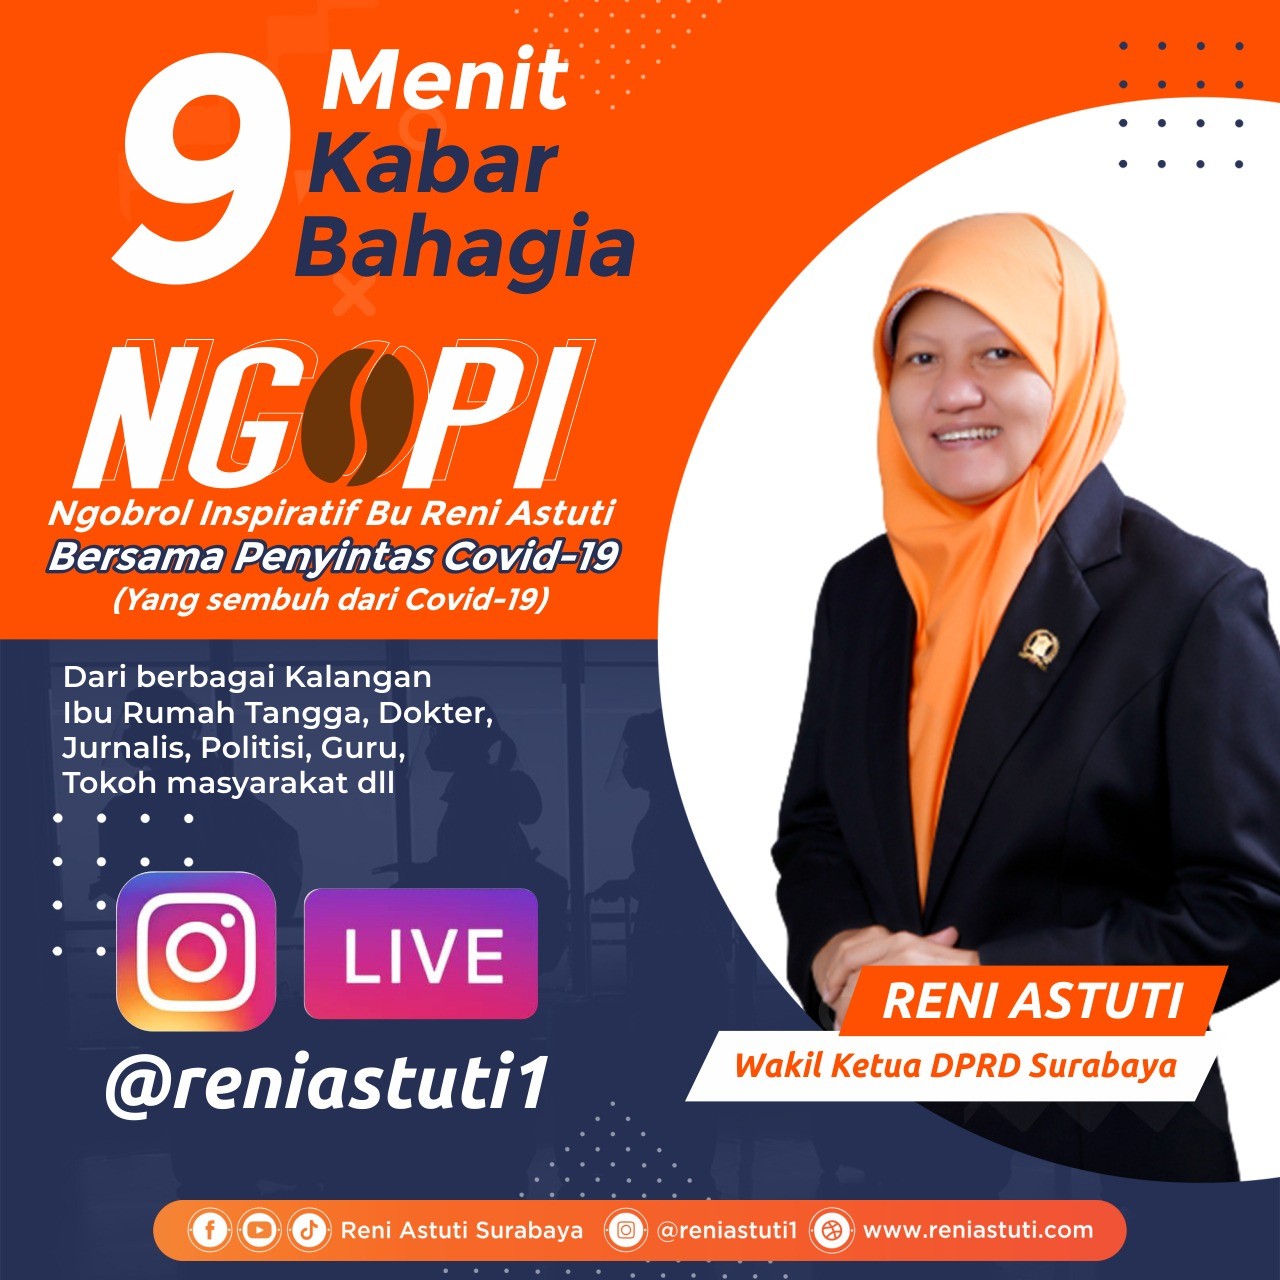 Wakil Ketua DPRD Surabaya, Reni Astuti gunakan Instagram untuk edukasi masalah Covid-19. (Foto: Tangkapan layar IG)